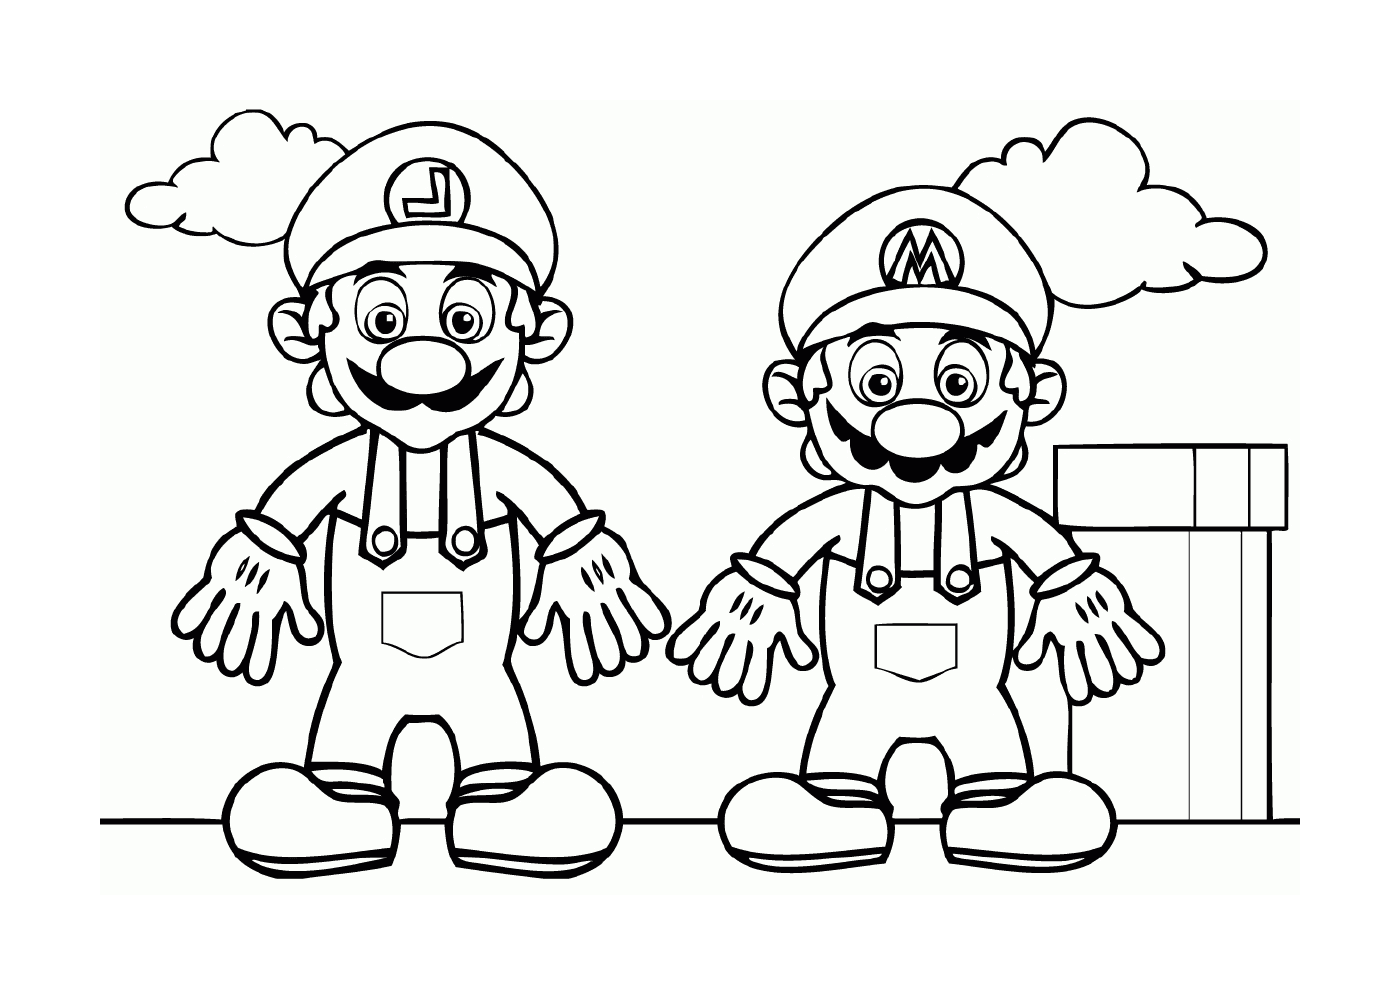  Luigi e Mario, dois irmãos famosos 